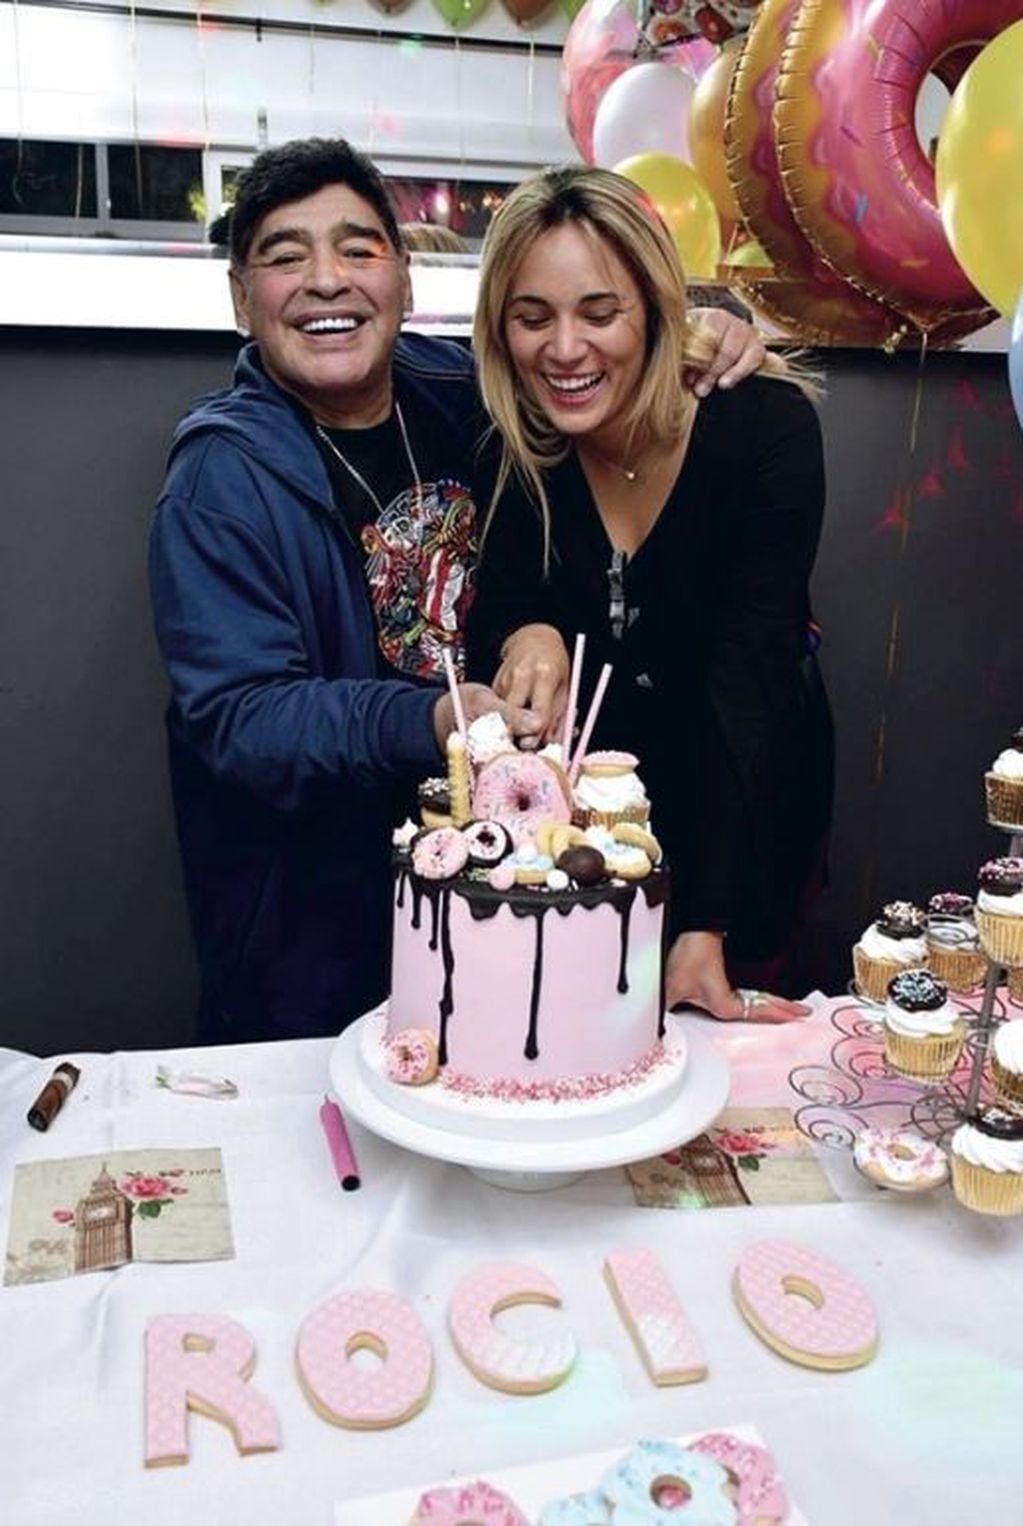 Diego Maradona y Rocío Oliva, felices cortando la torta de cumpleaños.